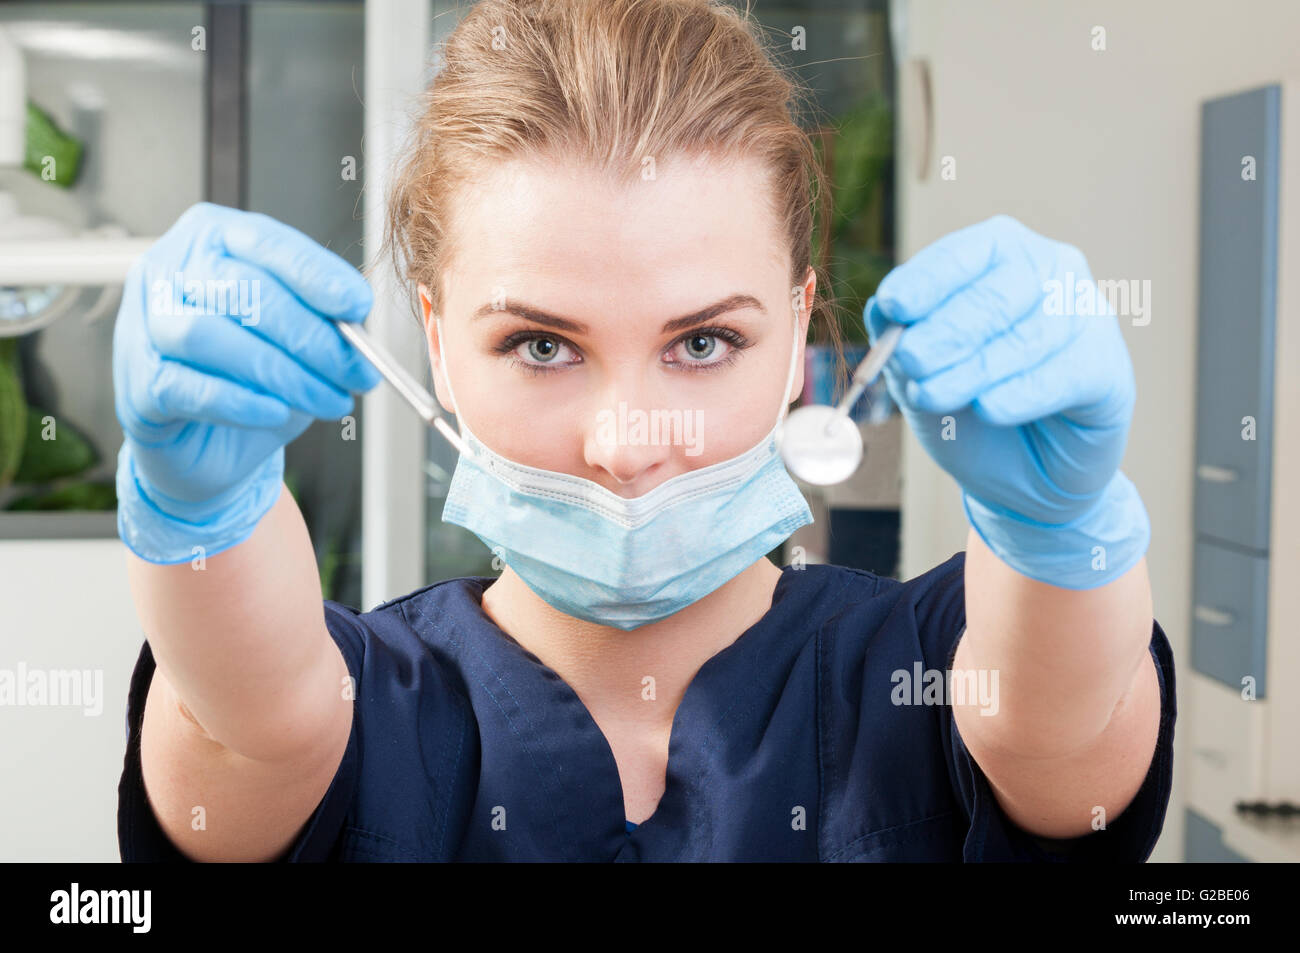 Attraktive Frau Zahnarzt Maske und blaue Handschuhe trägt und hält  zahnärztliche Instrumente in ihrer ausgestreckten Armen immer bereit für  eine consult Stockfotografie - Alamy